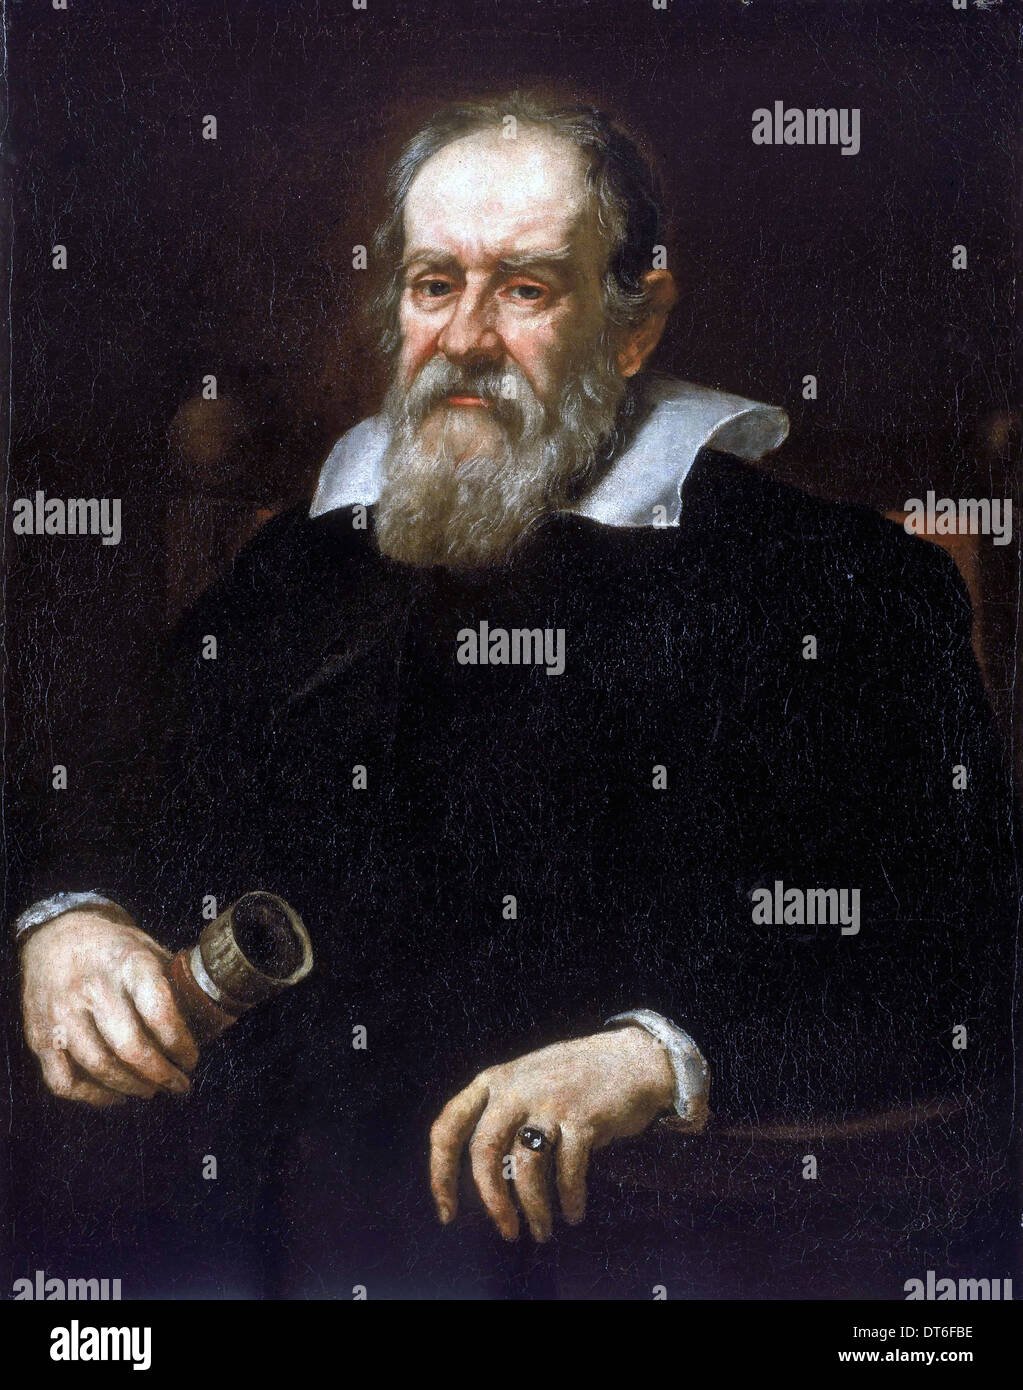 GALILEO GALILEI (1564-1642) Italiano astronomo e matematico nel 1636 ritratto da Justus Sustermans Foto Stock